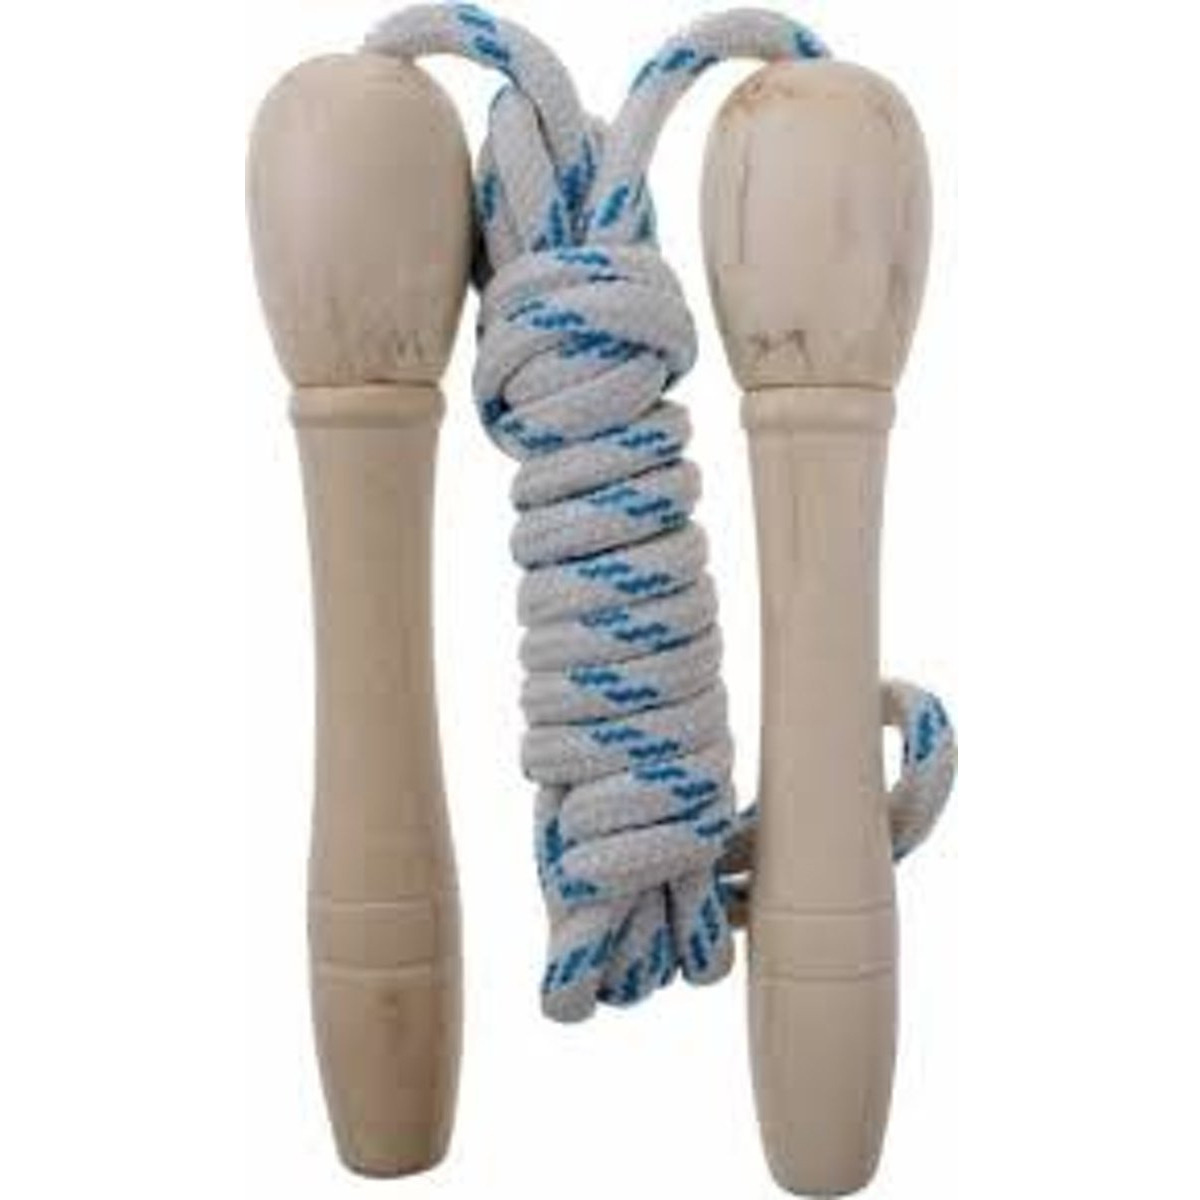 Springtouw wit/ donker blauw 210 cm met houten handvatten speelgoed